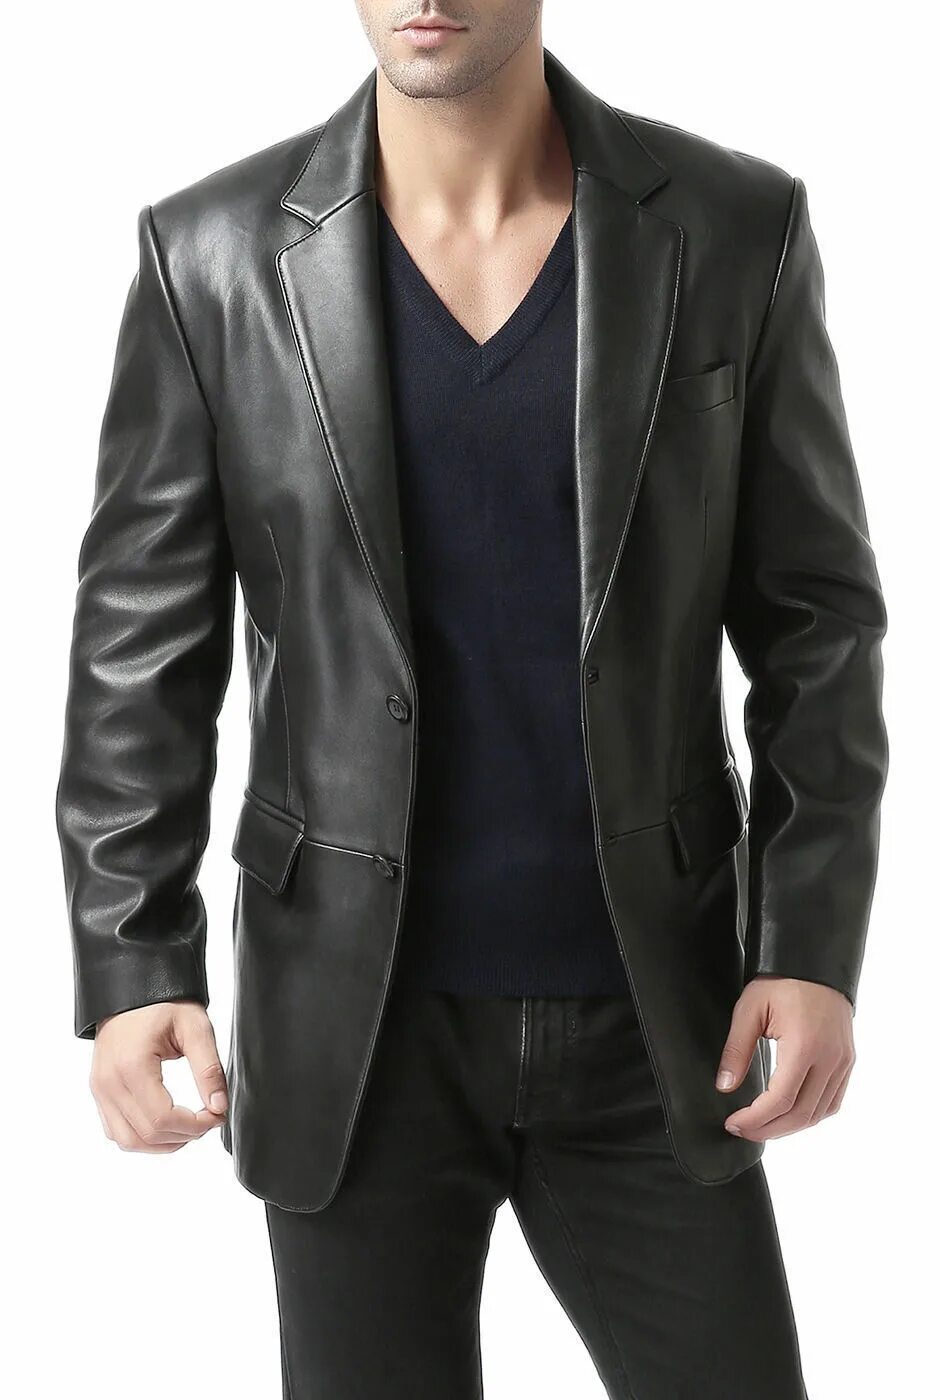 Заказать кожаную мужскую. Lambskin Leather пиджаки. Кожаный пиджак мужской. Кожаная куртка пиджак. Классический кожаный пиджак.